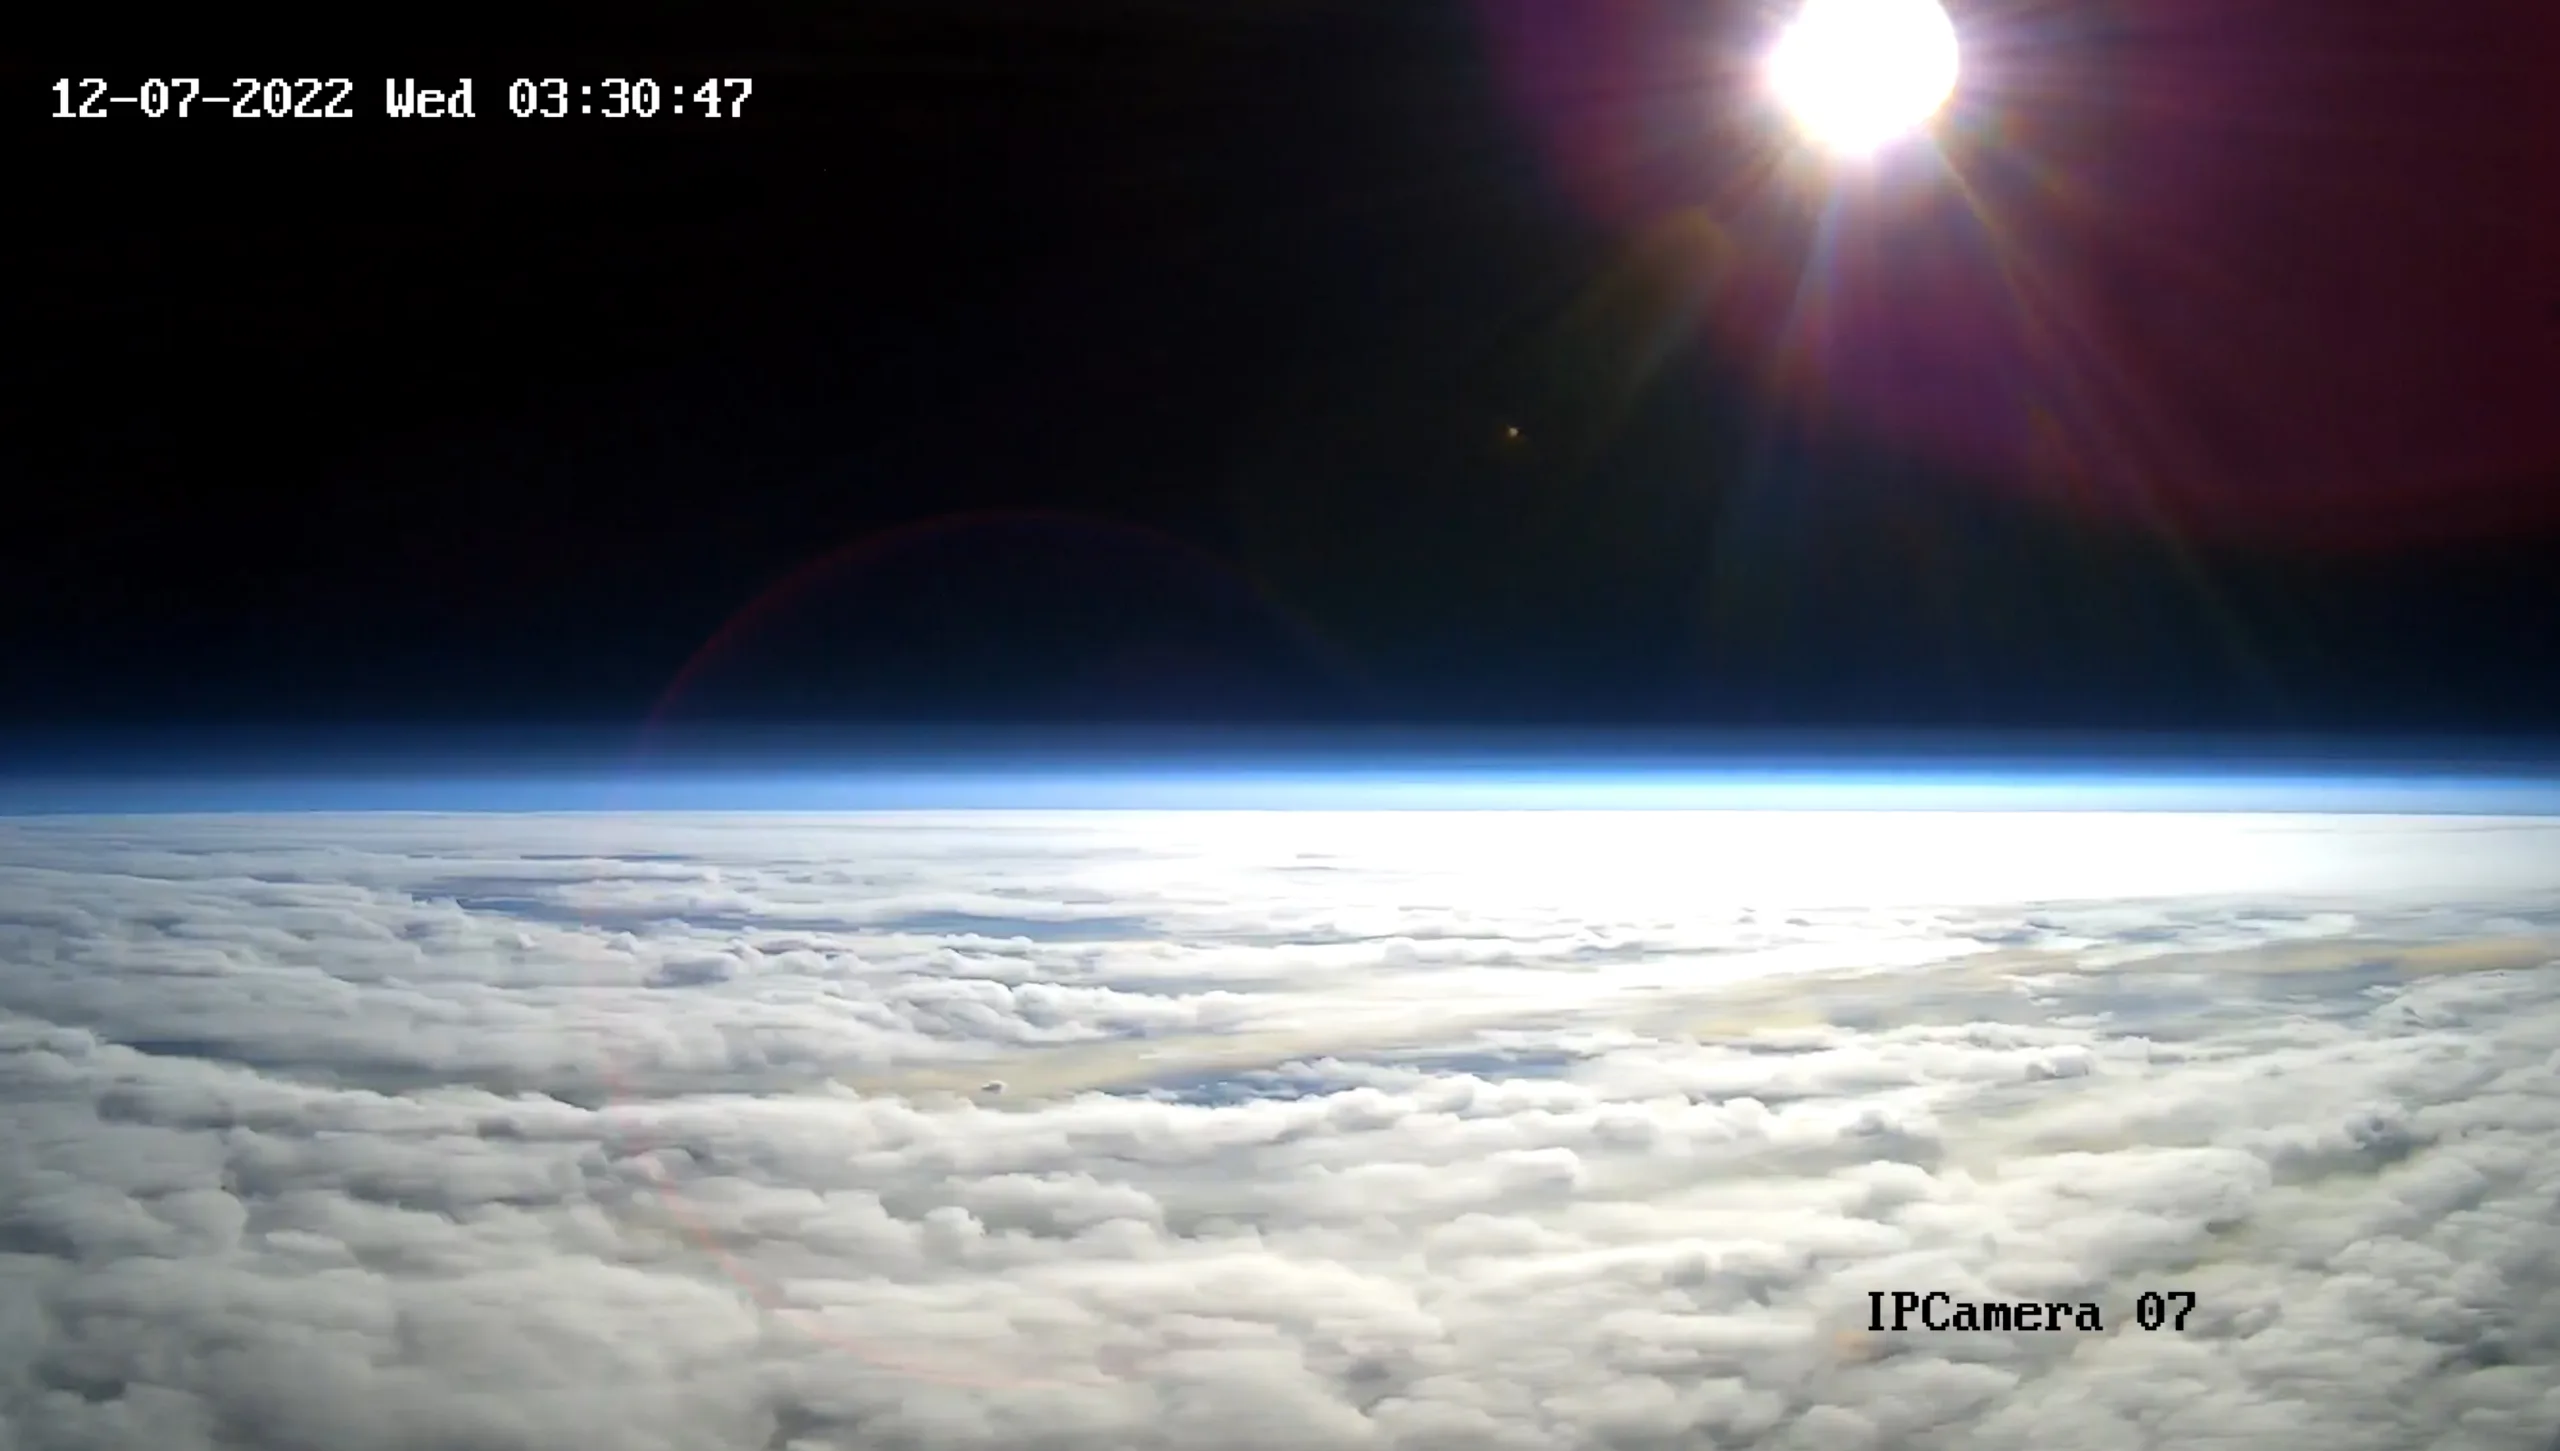 halo space'in ilk test uçuşu sırasında yükselen prototip kapsülünden gün doğumu görüntüsü.